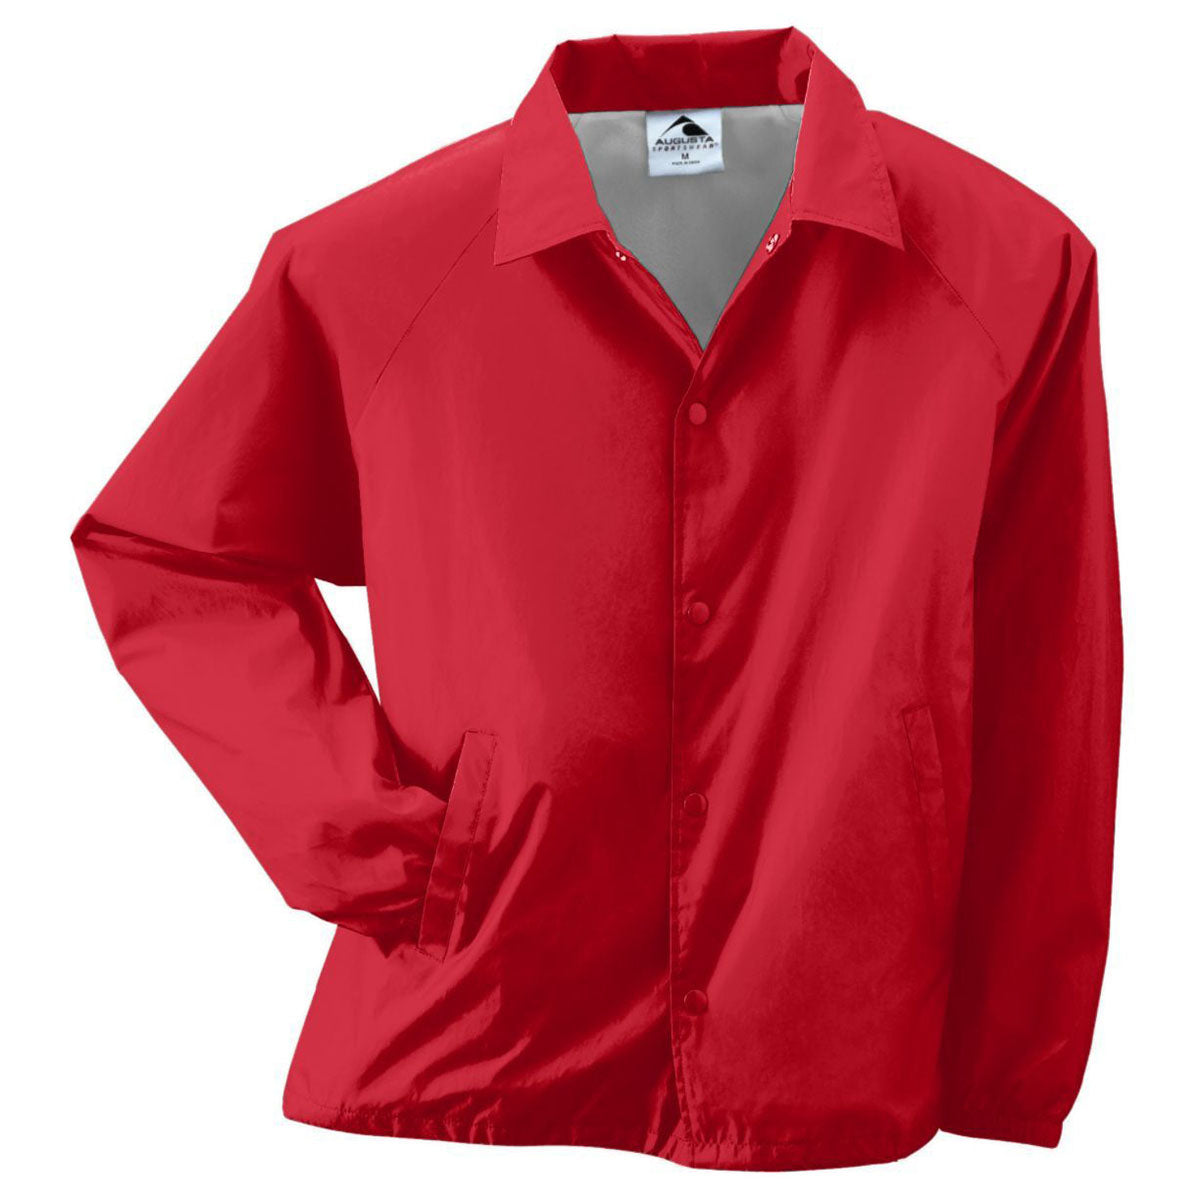 Augusta Sportswear Men's Red Nylon Coach's Jacket Lined